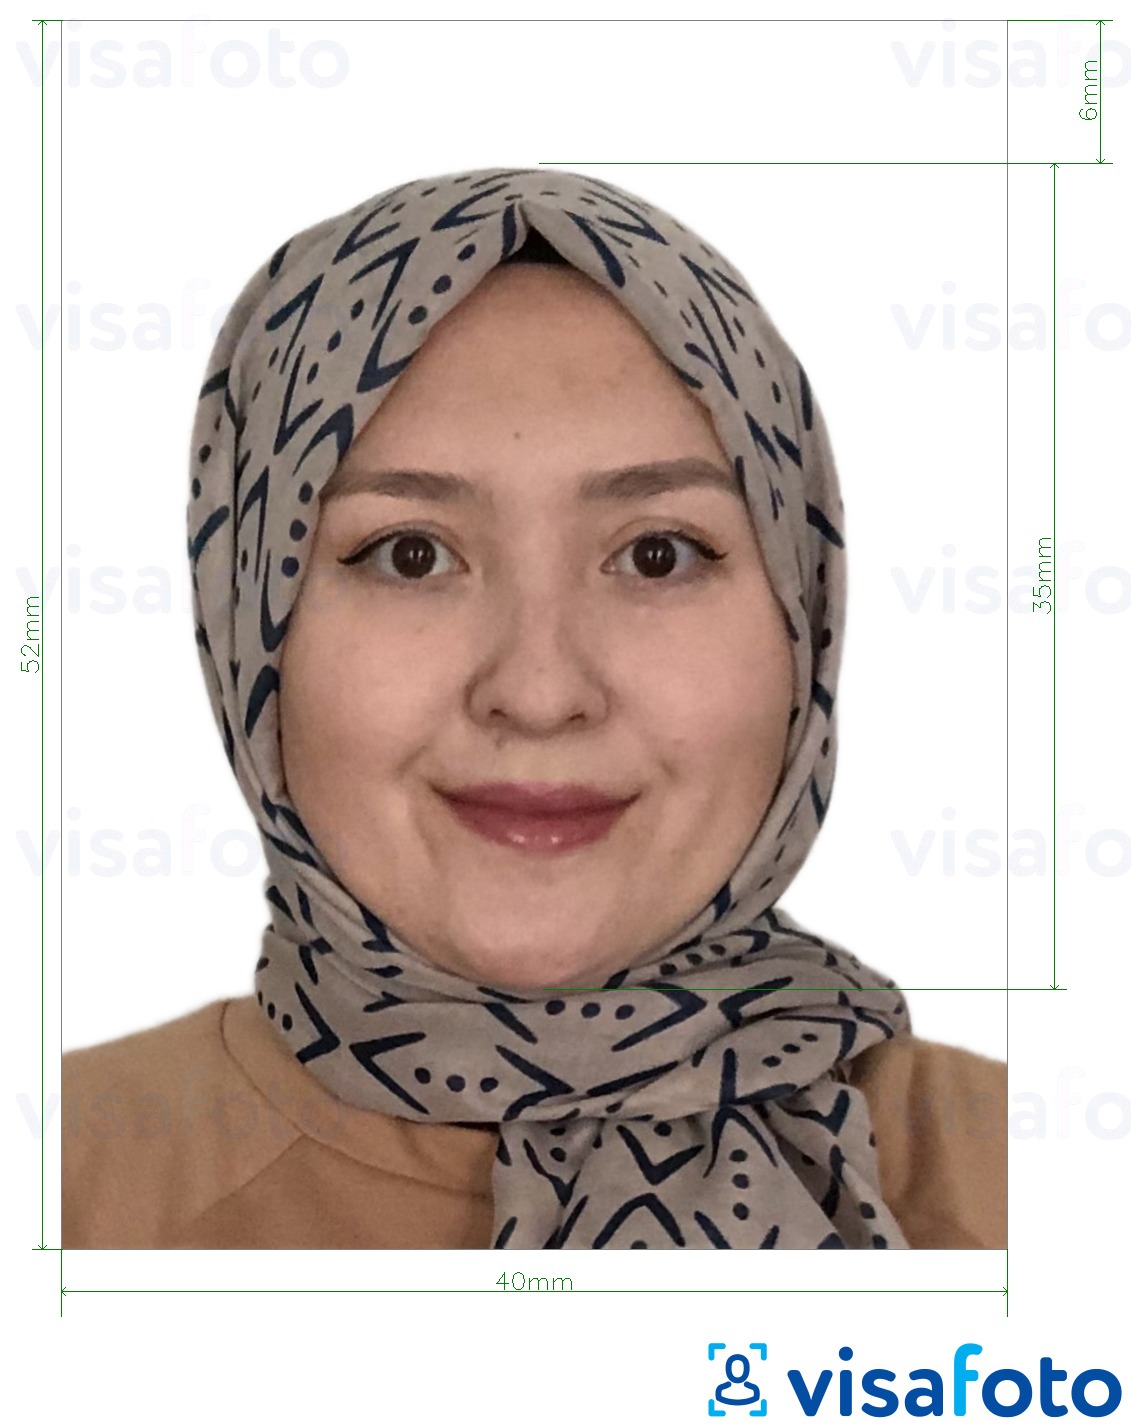 так көлөмү көрсөтүү менен Бруней паспорт 5.2x4 см (52x40 мм) сүрөтү үлгүсү